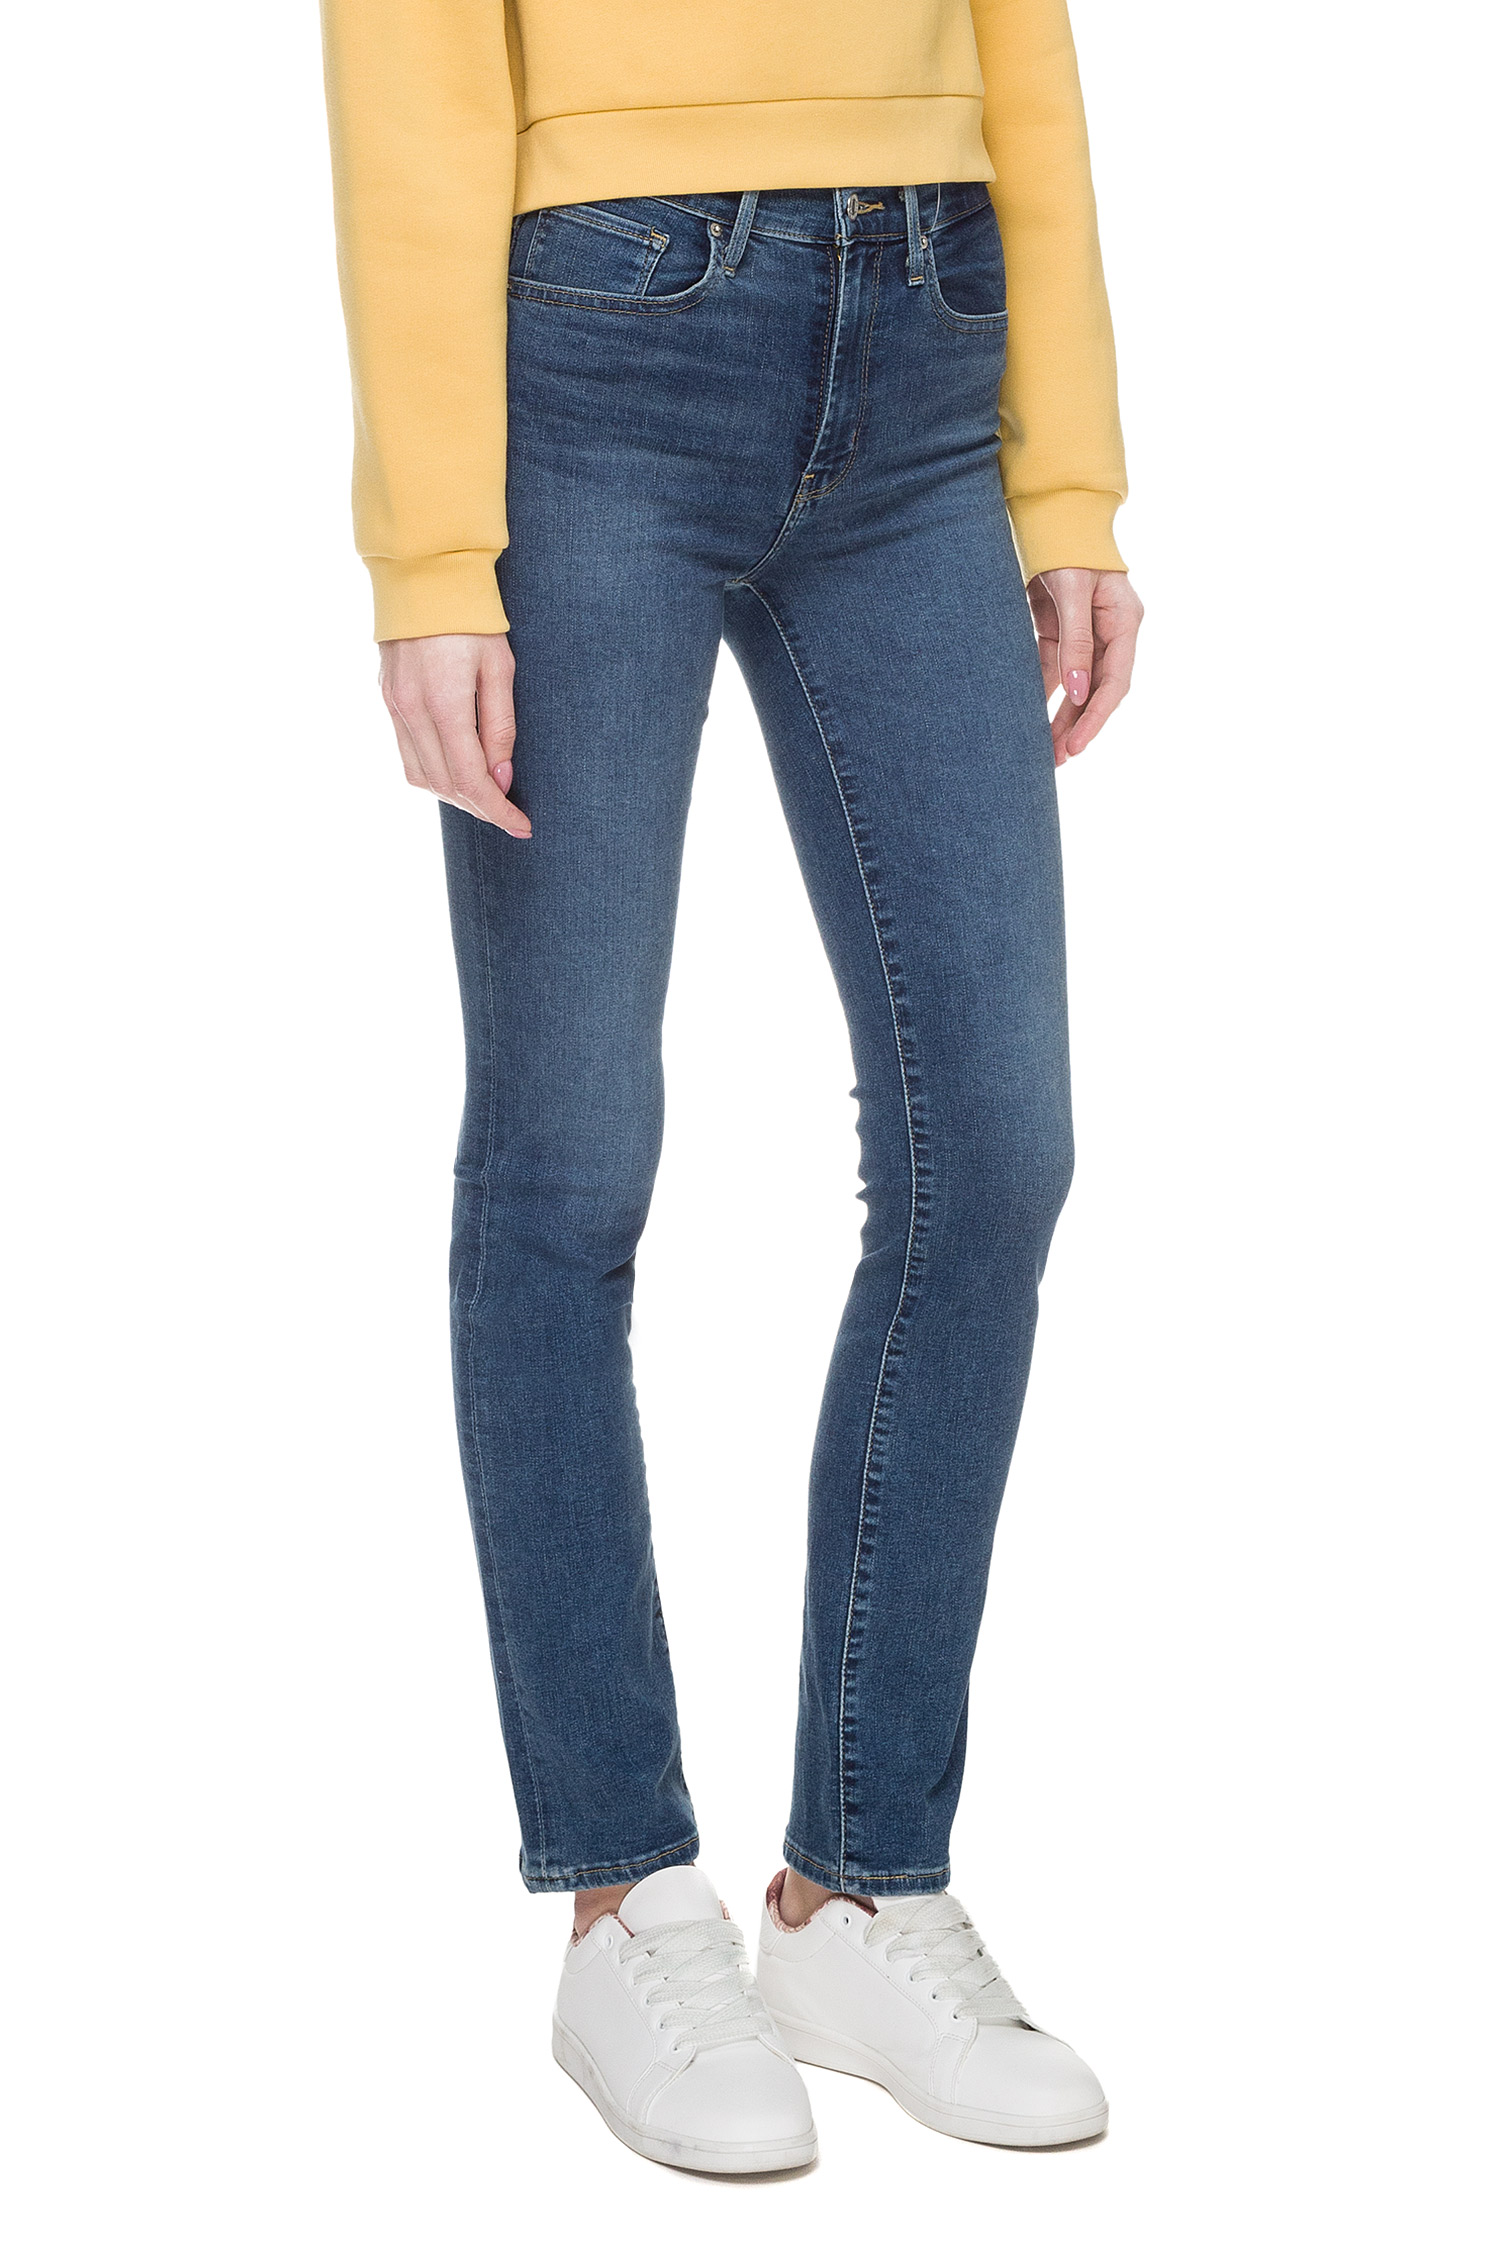 Жіночі сині джинси 724™ High Rise Straight Levi’s® 18883;0075